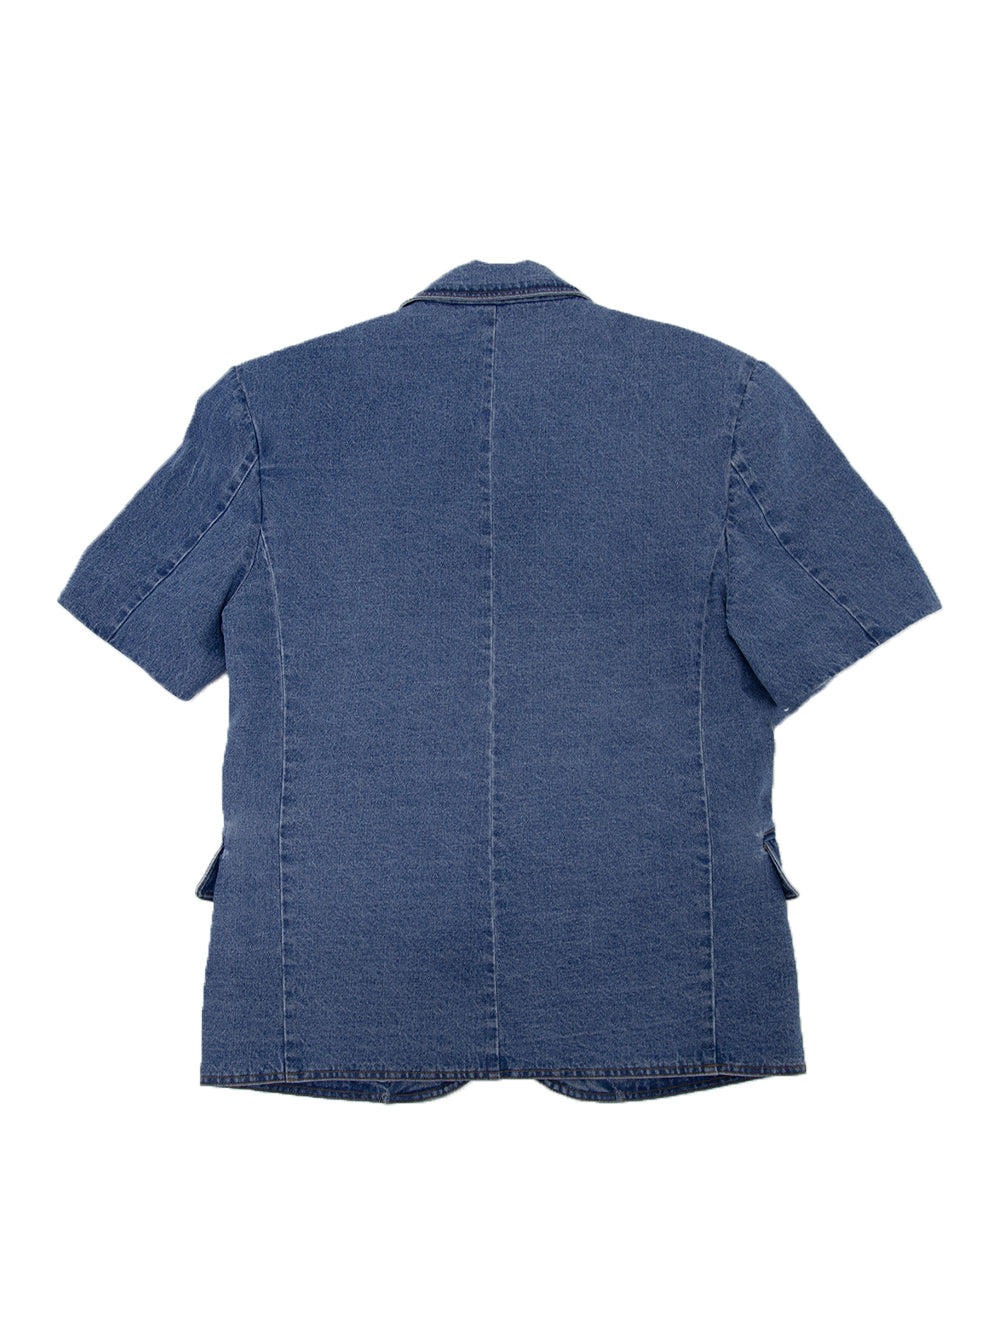 Tucked Half Sleeve Blazer (Blue)